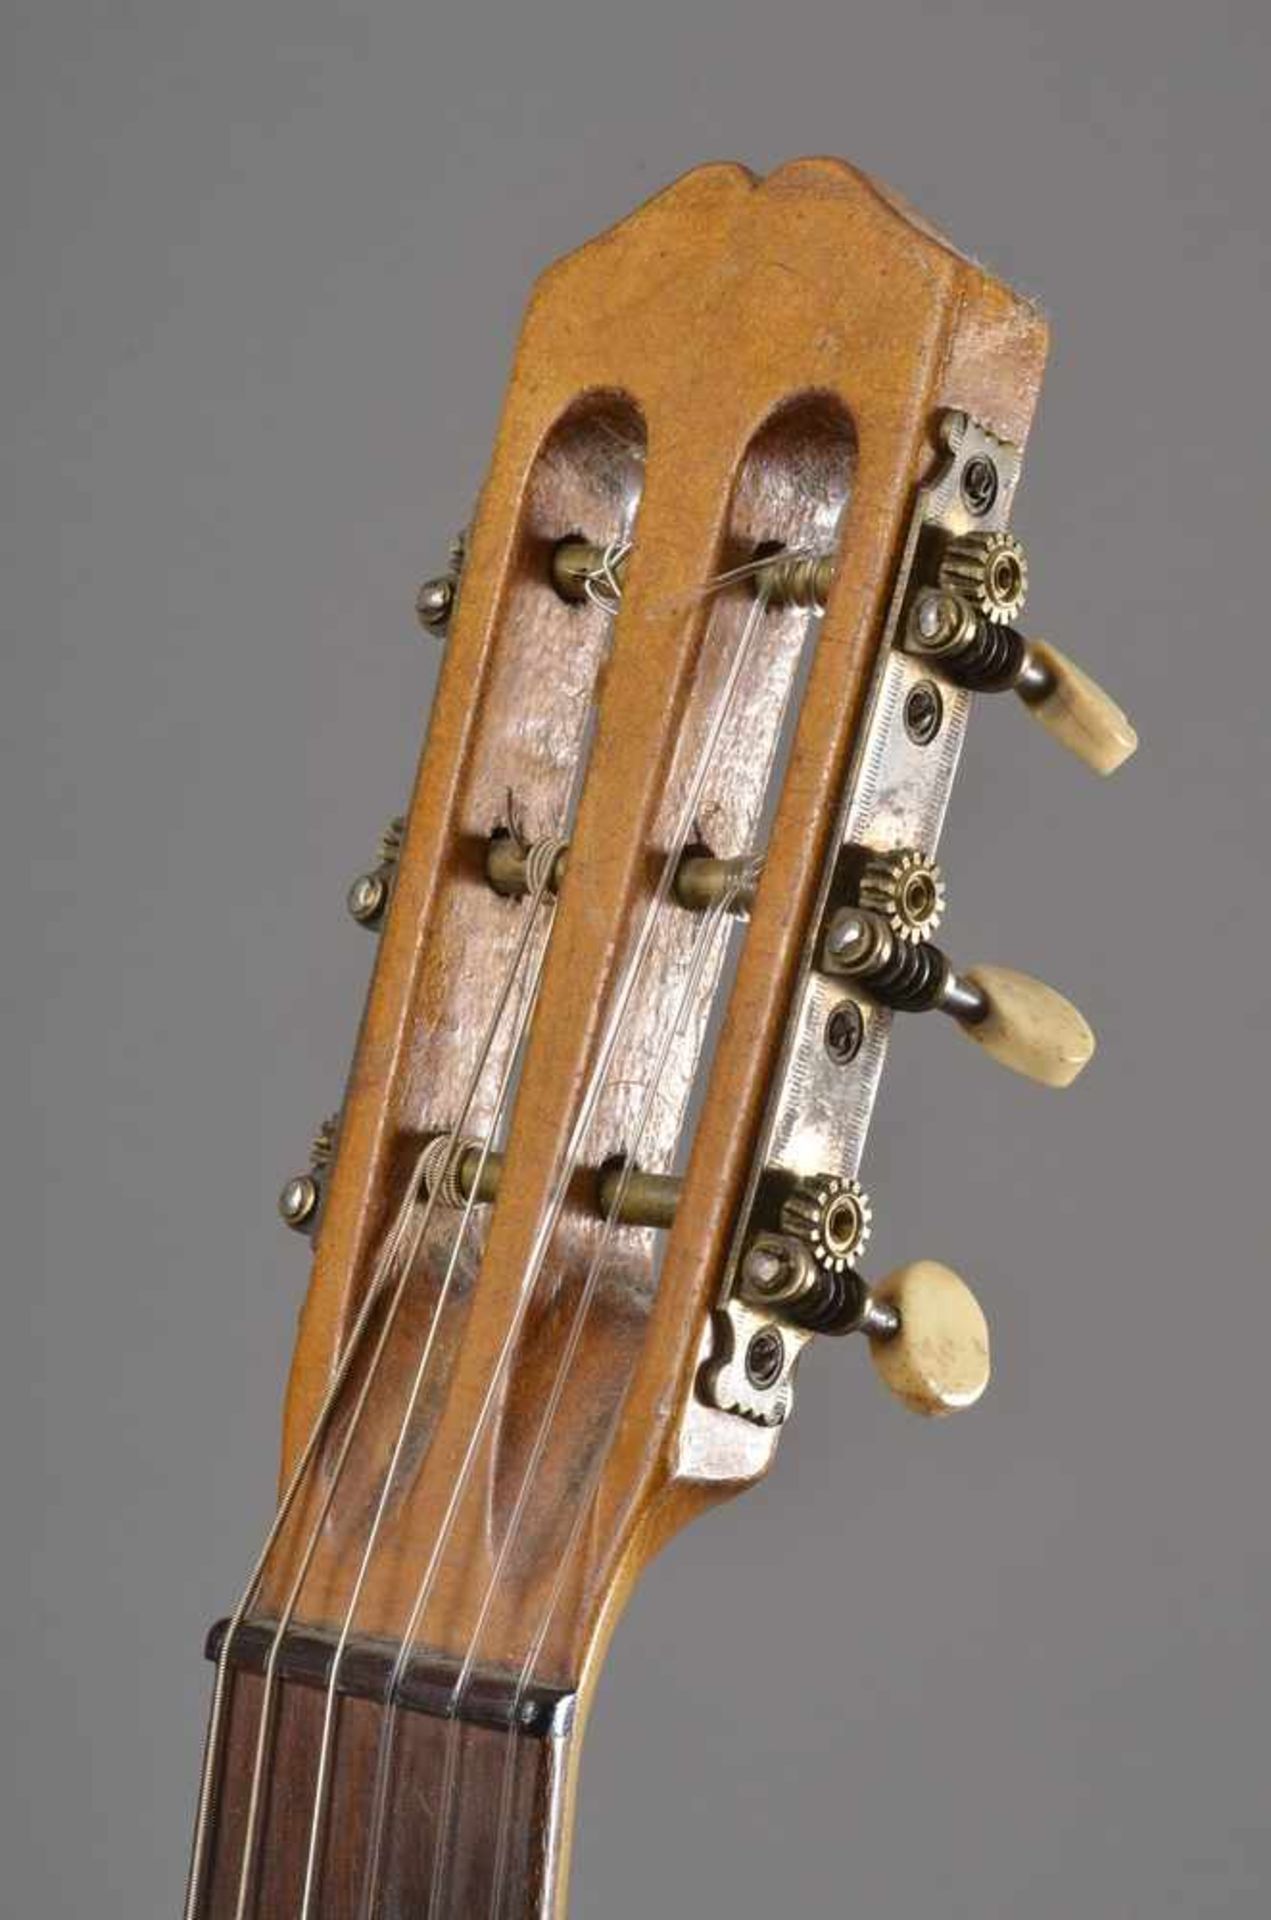 Historische Gitarre, Mensur 62cm, Gesamtlänge 93cm, Saitenhöhe 4mm, ca. 100 Jahre alt, spielbar - Bild 5 aus 8